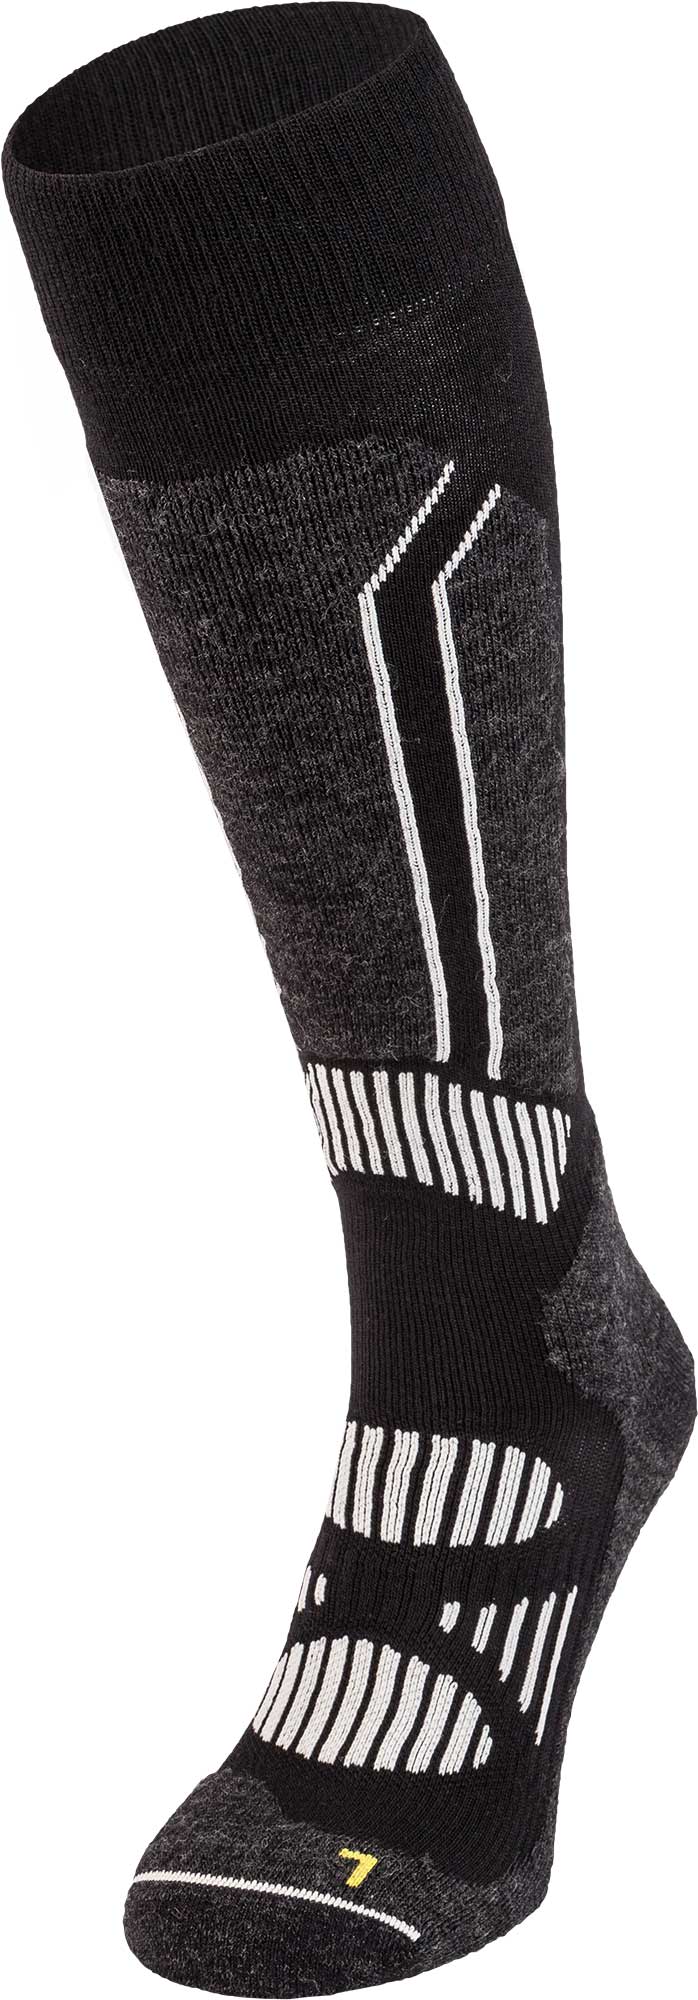 Men’s knee-high sports socks